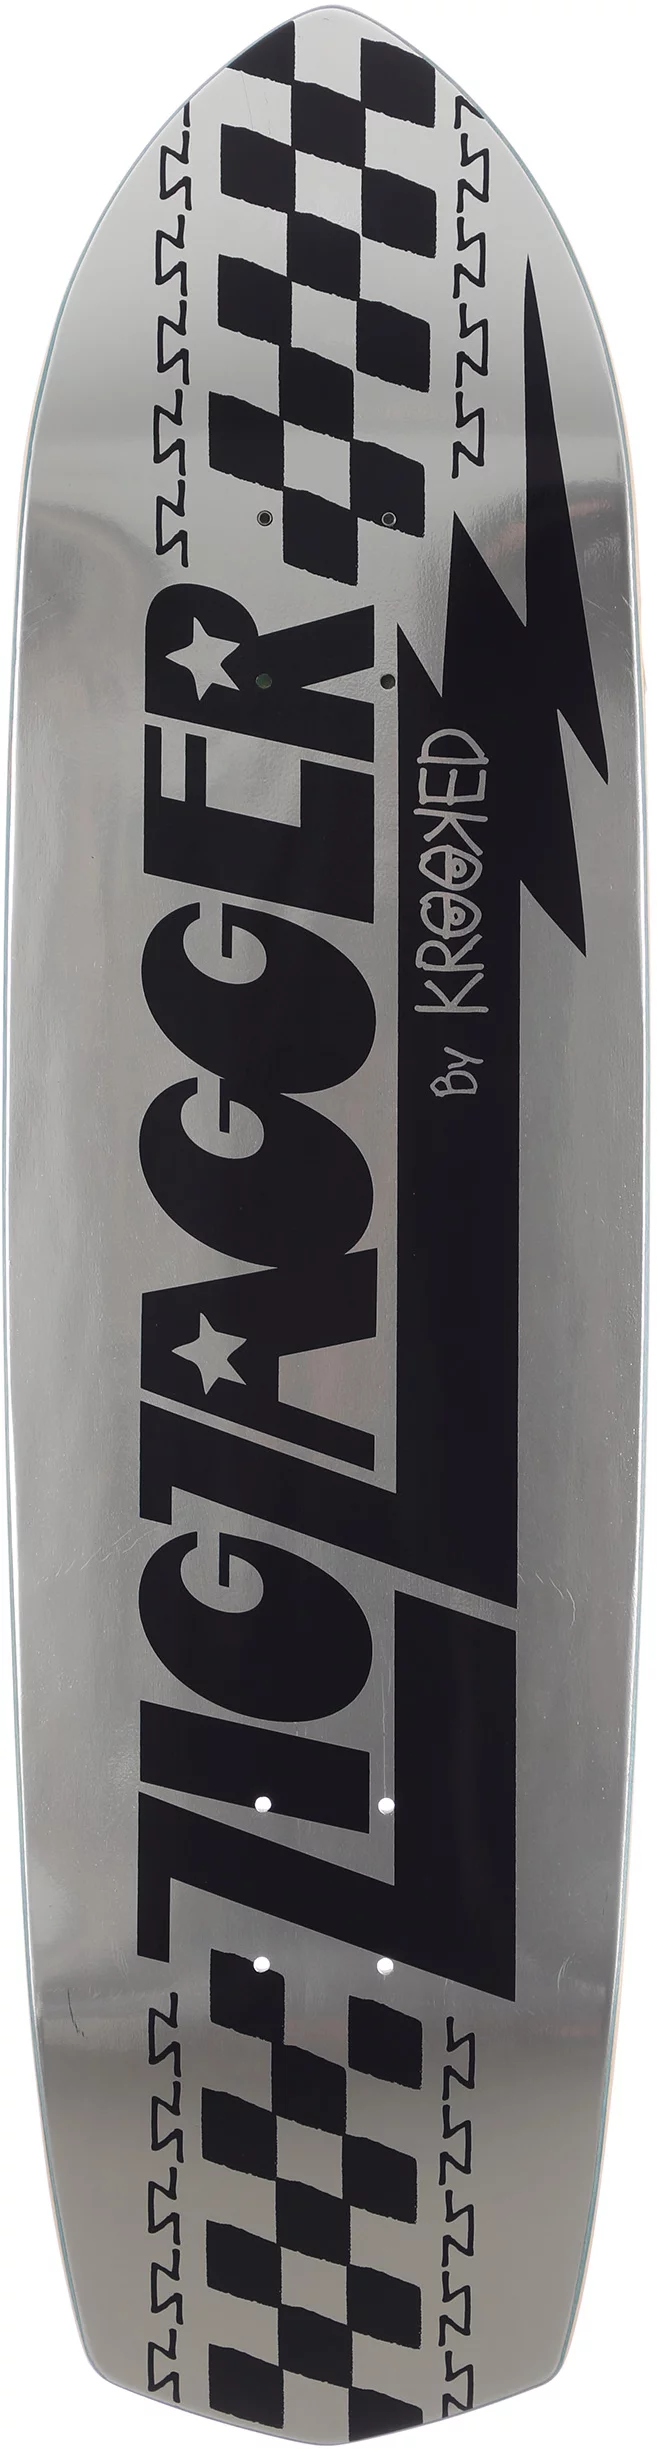 Krooked Zig Zagger 8.62 Skateboard Deck - silver foil - Free 